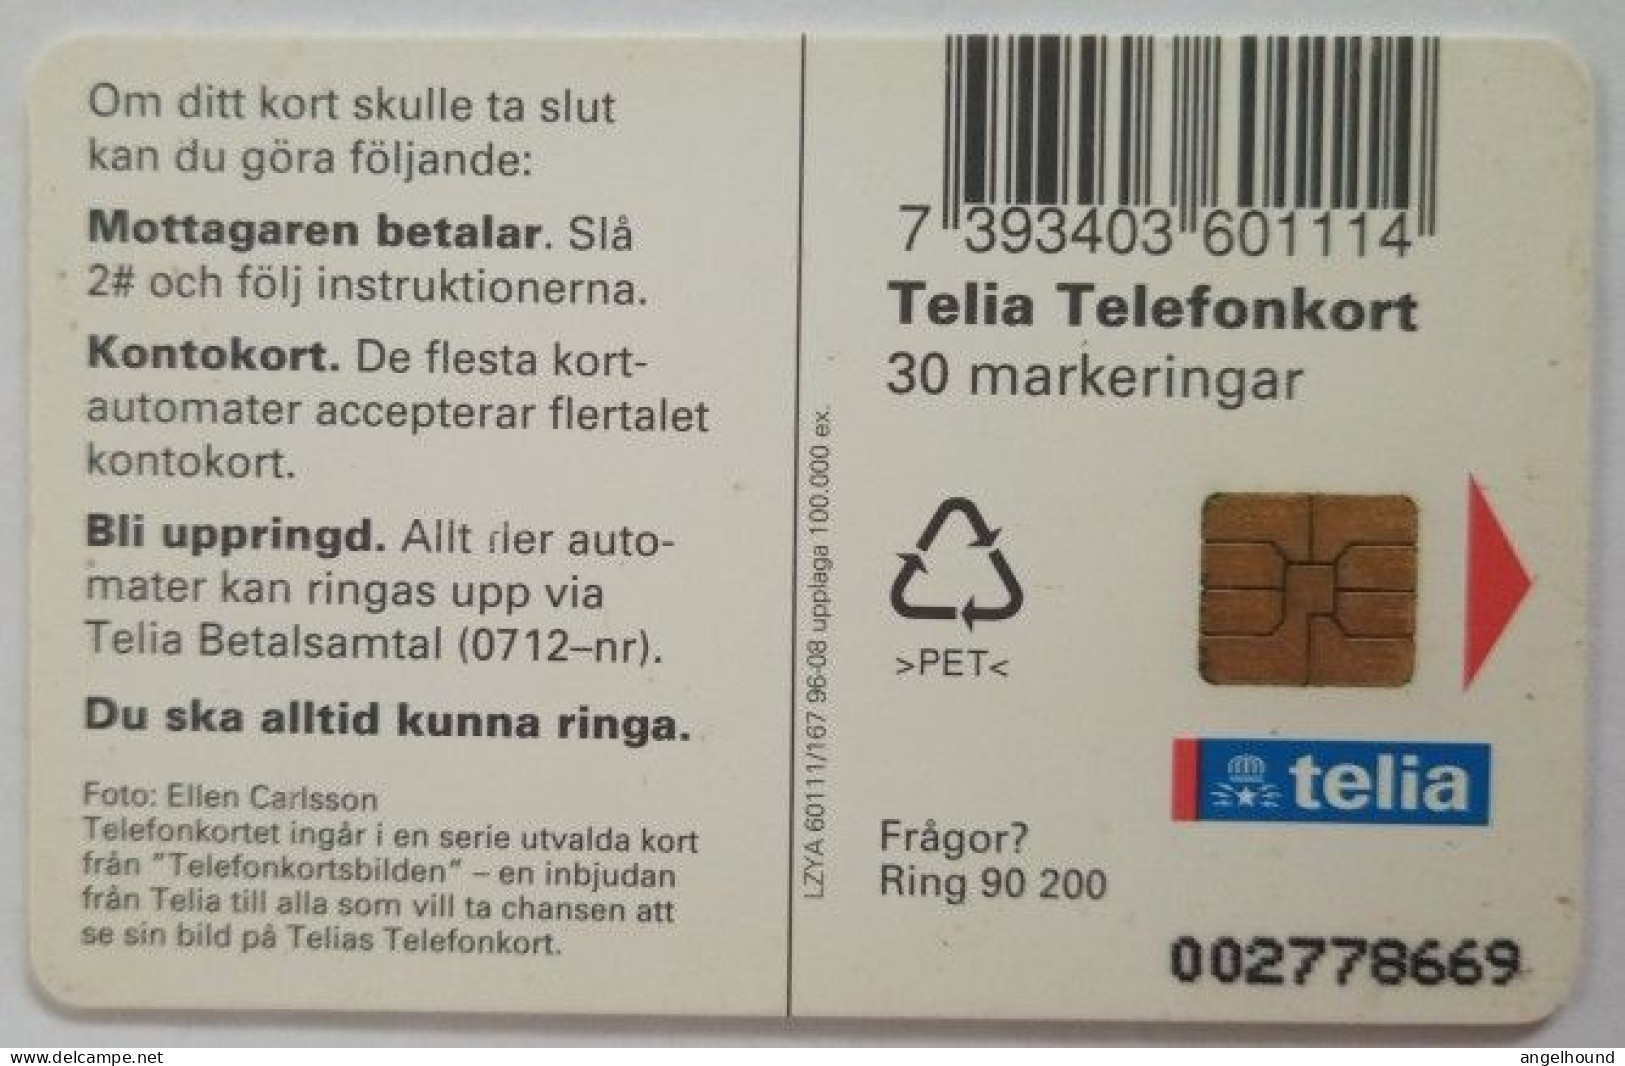 Sweden 30Mk. Chip Card - Bird 4 Tawny Owls - Strix Aluco Owls - Schweden